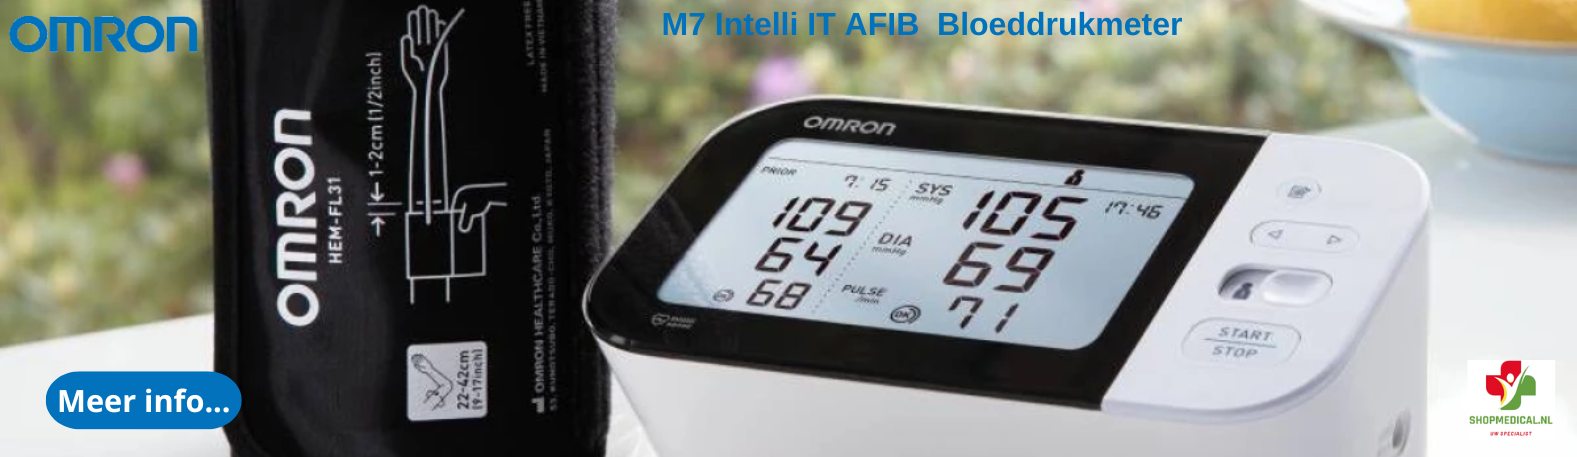 Omron M7 Intelli IT AFIB Bloeddrukmeter